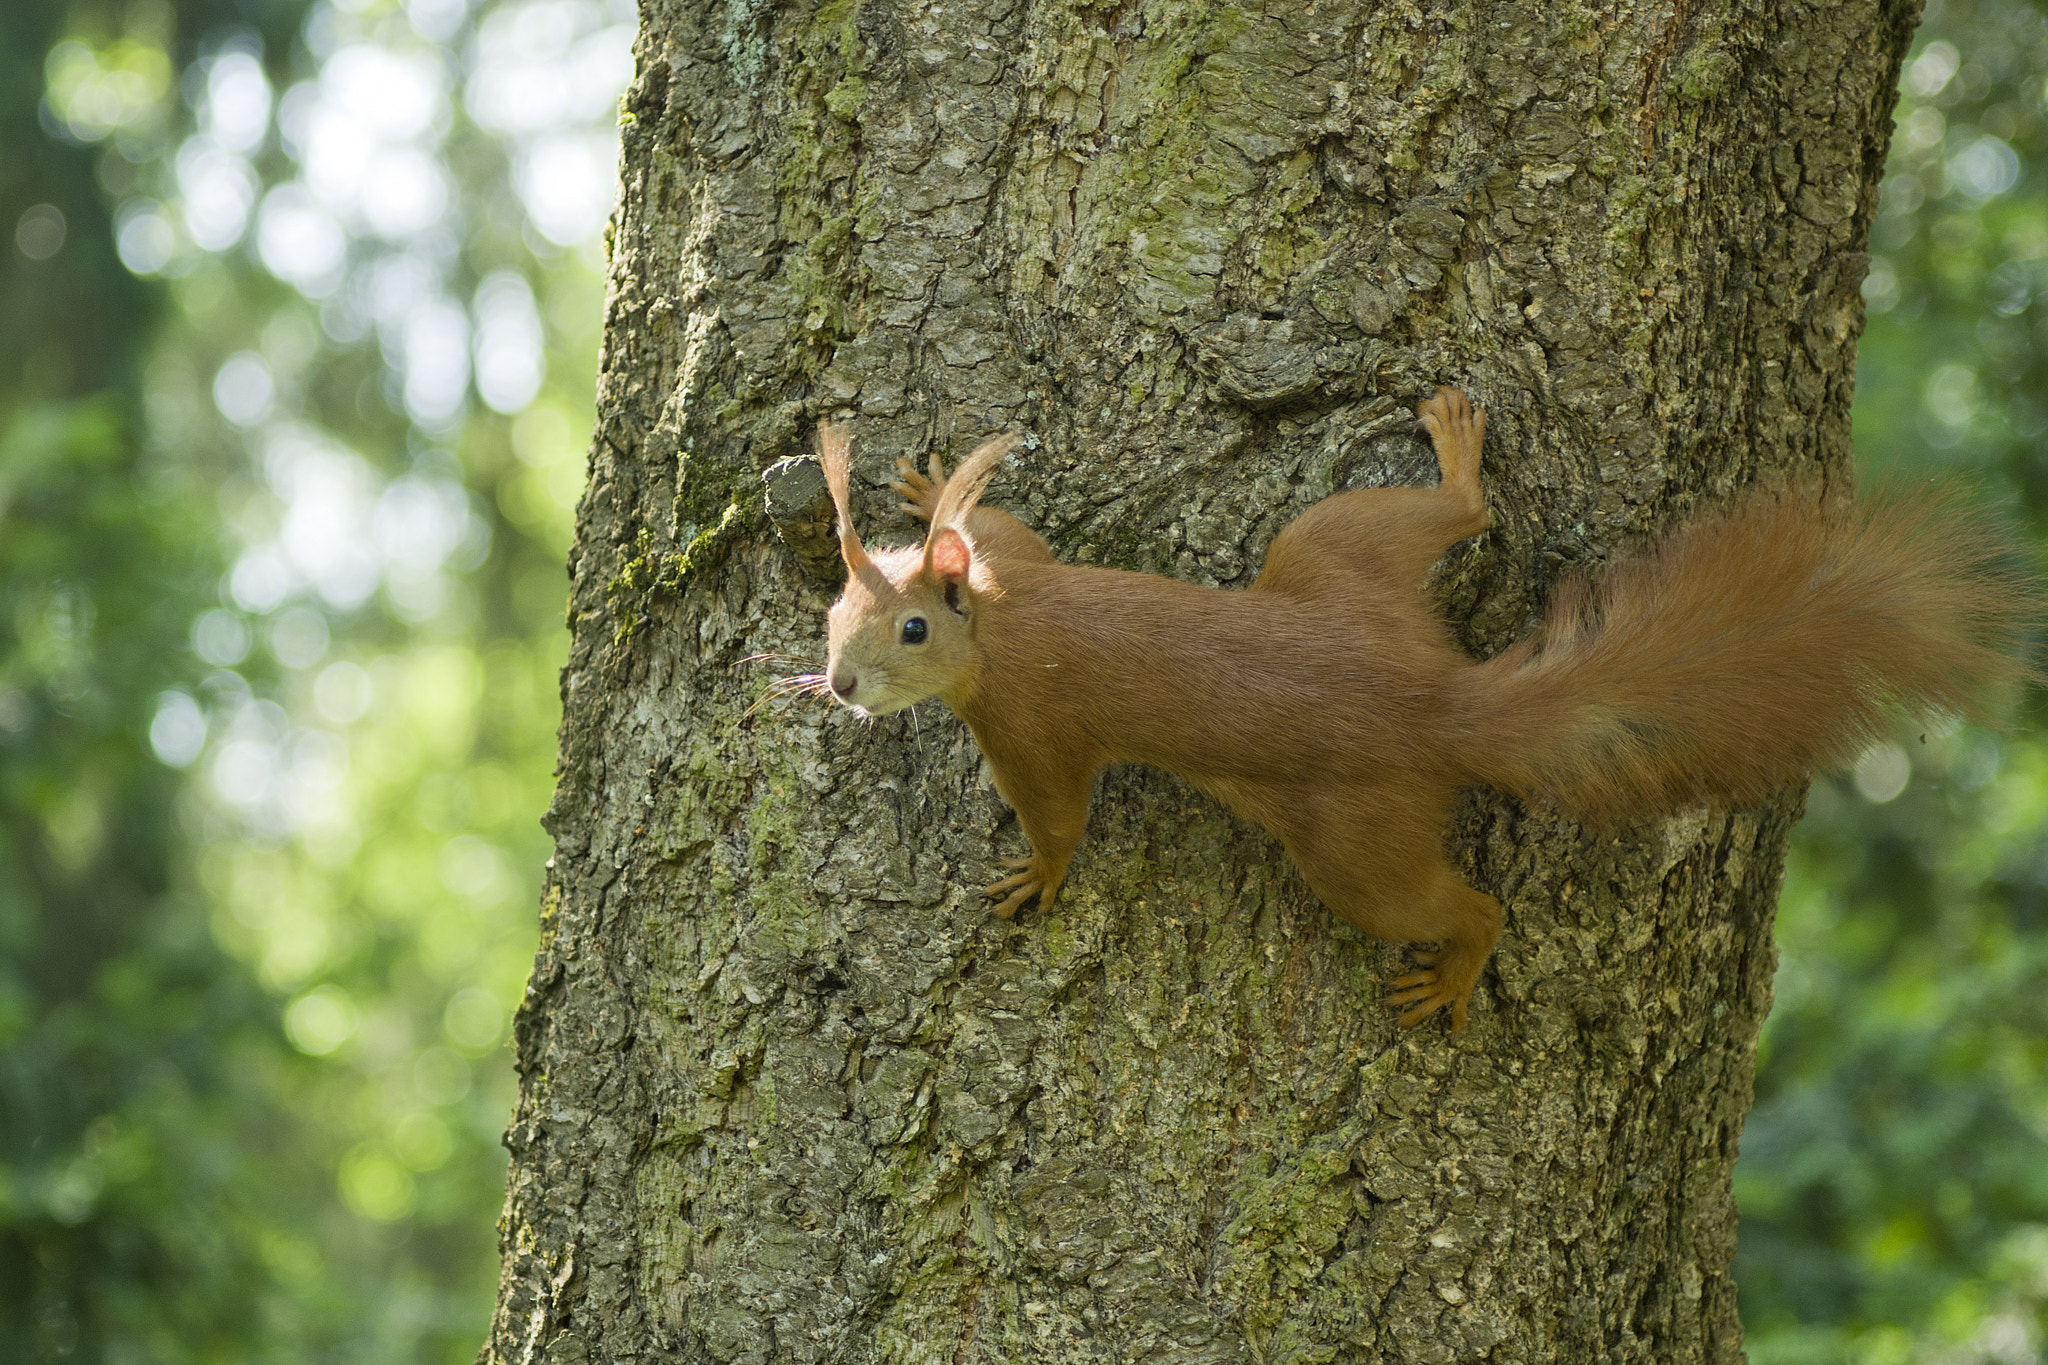 Pentax K-5 sample photo. Red squirrel (sciurus vulgaris) photography